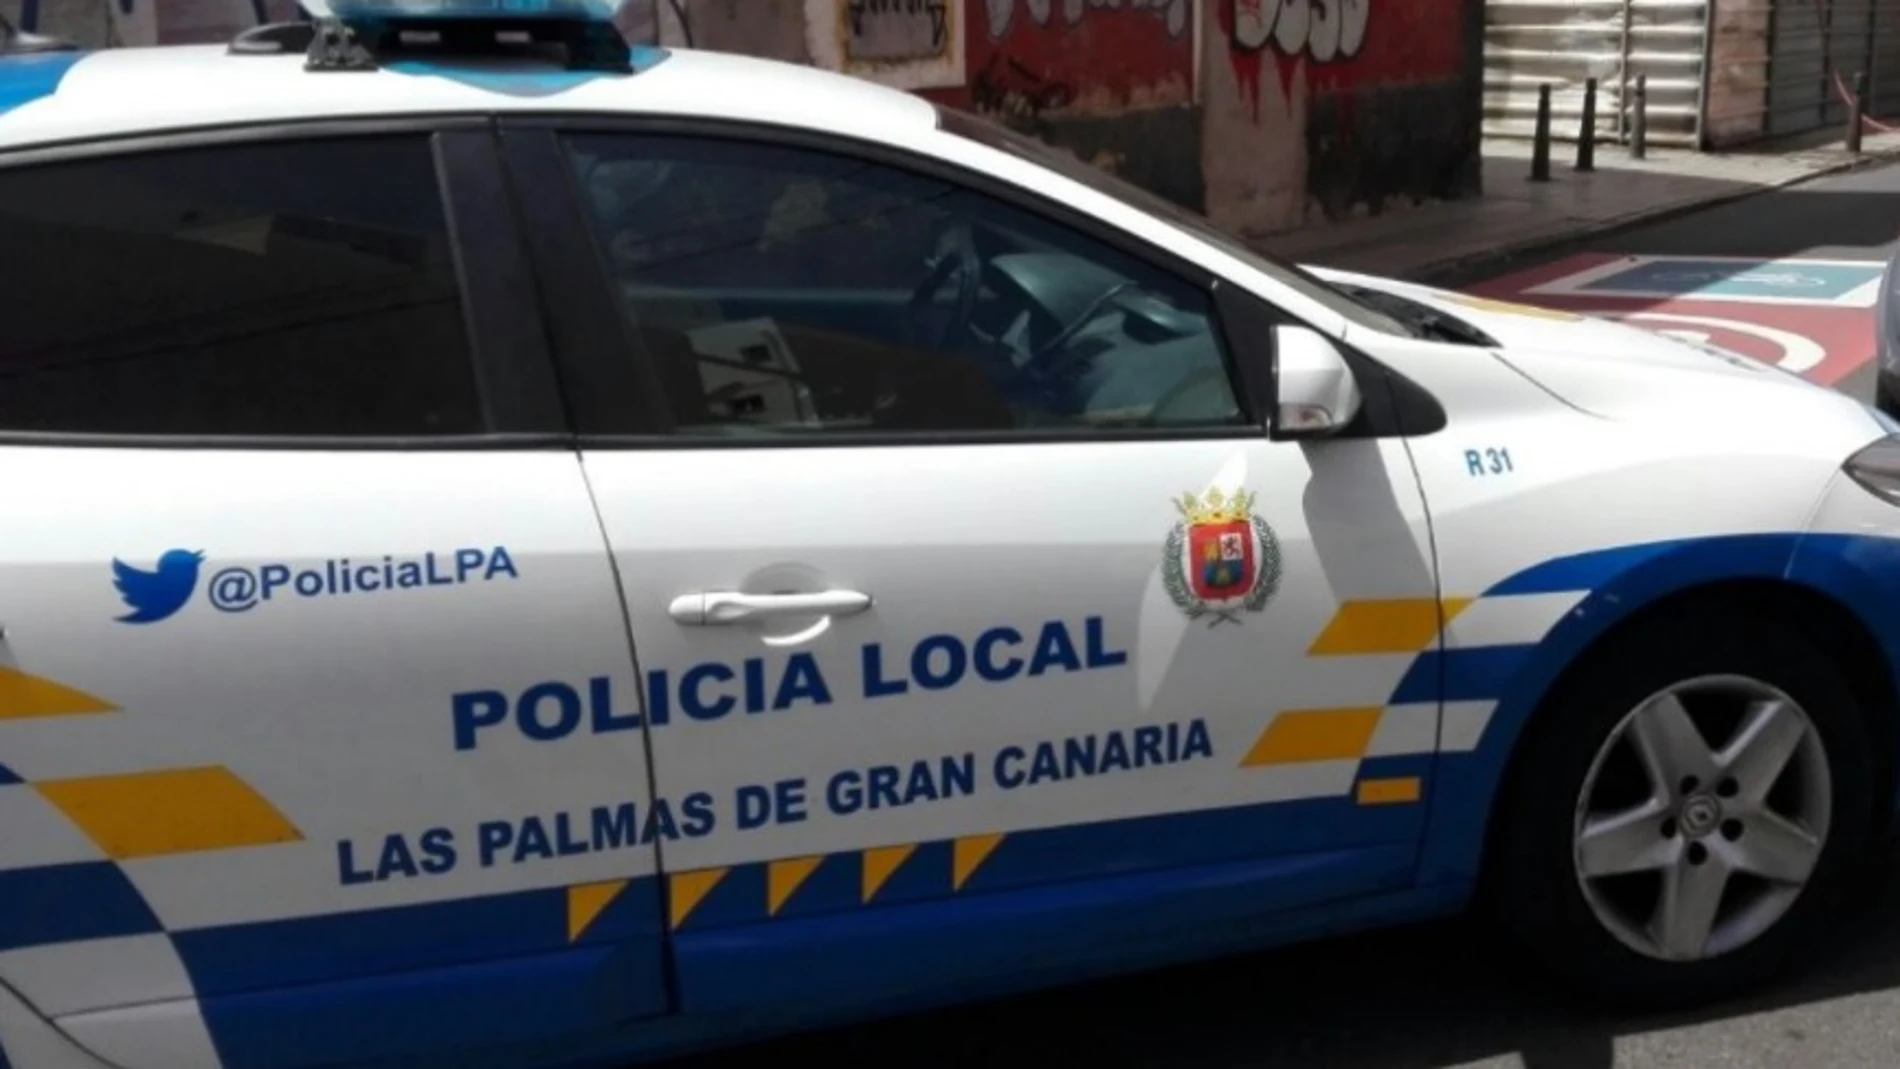 Coche de la policía local de Las Palmas de Gran Canaria